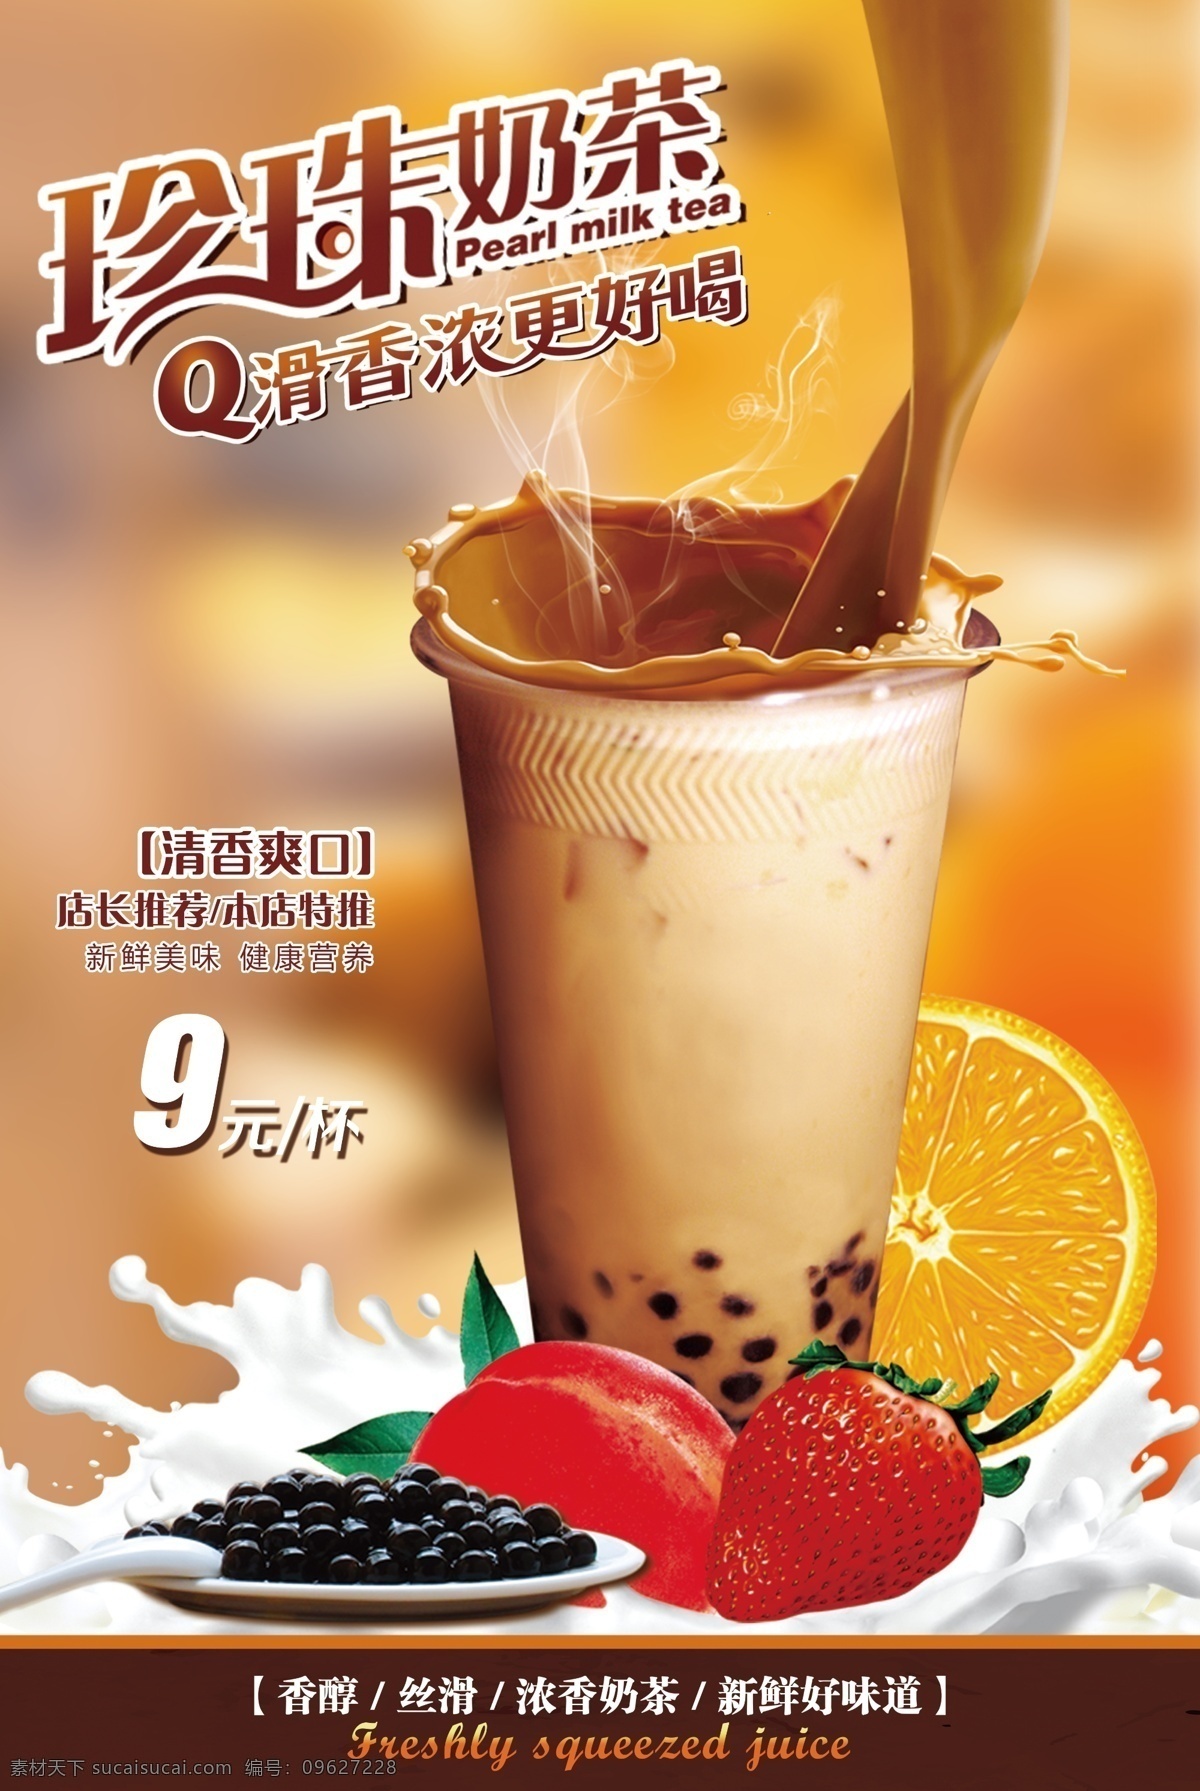 珍珠 奶茶 活动 促销 宣传海报 素材图片 珍珠奶茶 宣传 海报 饮料 饮品 甜品 类